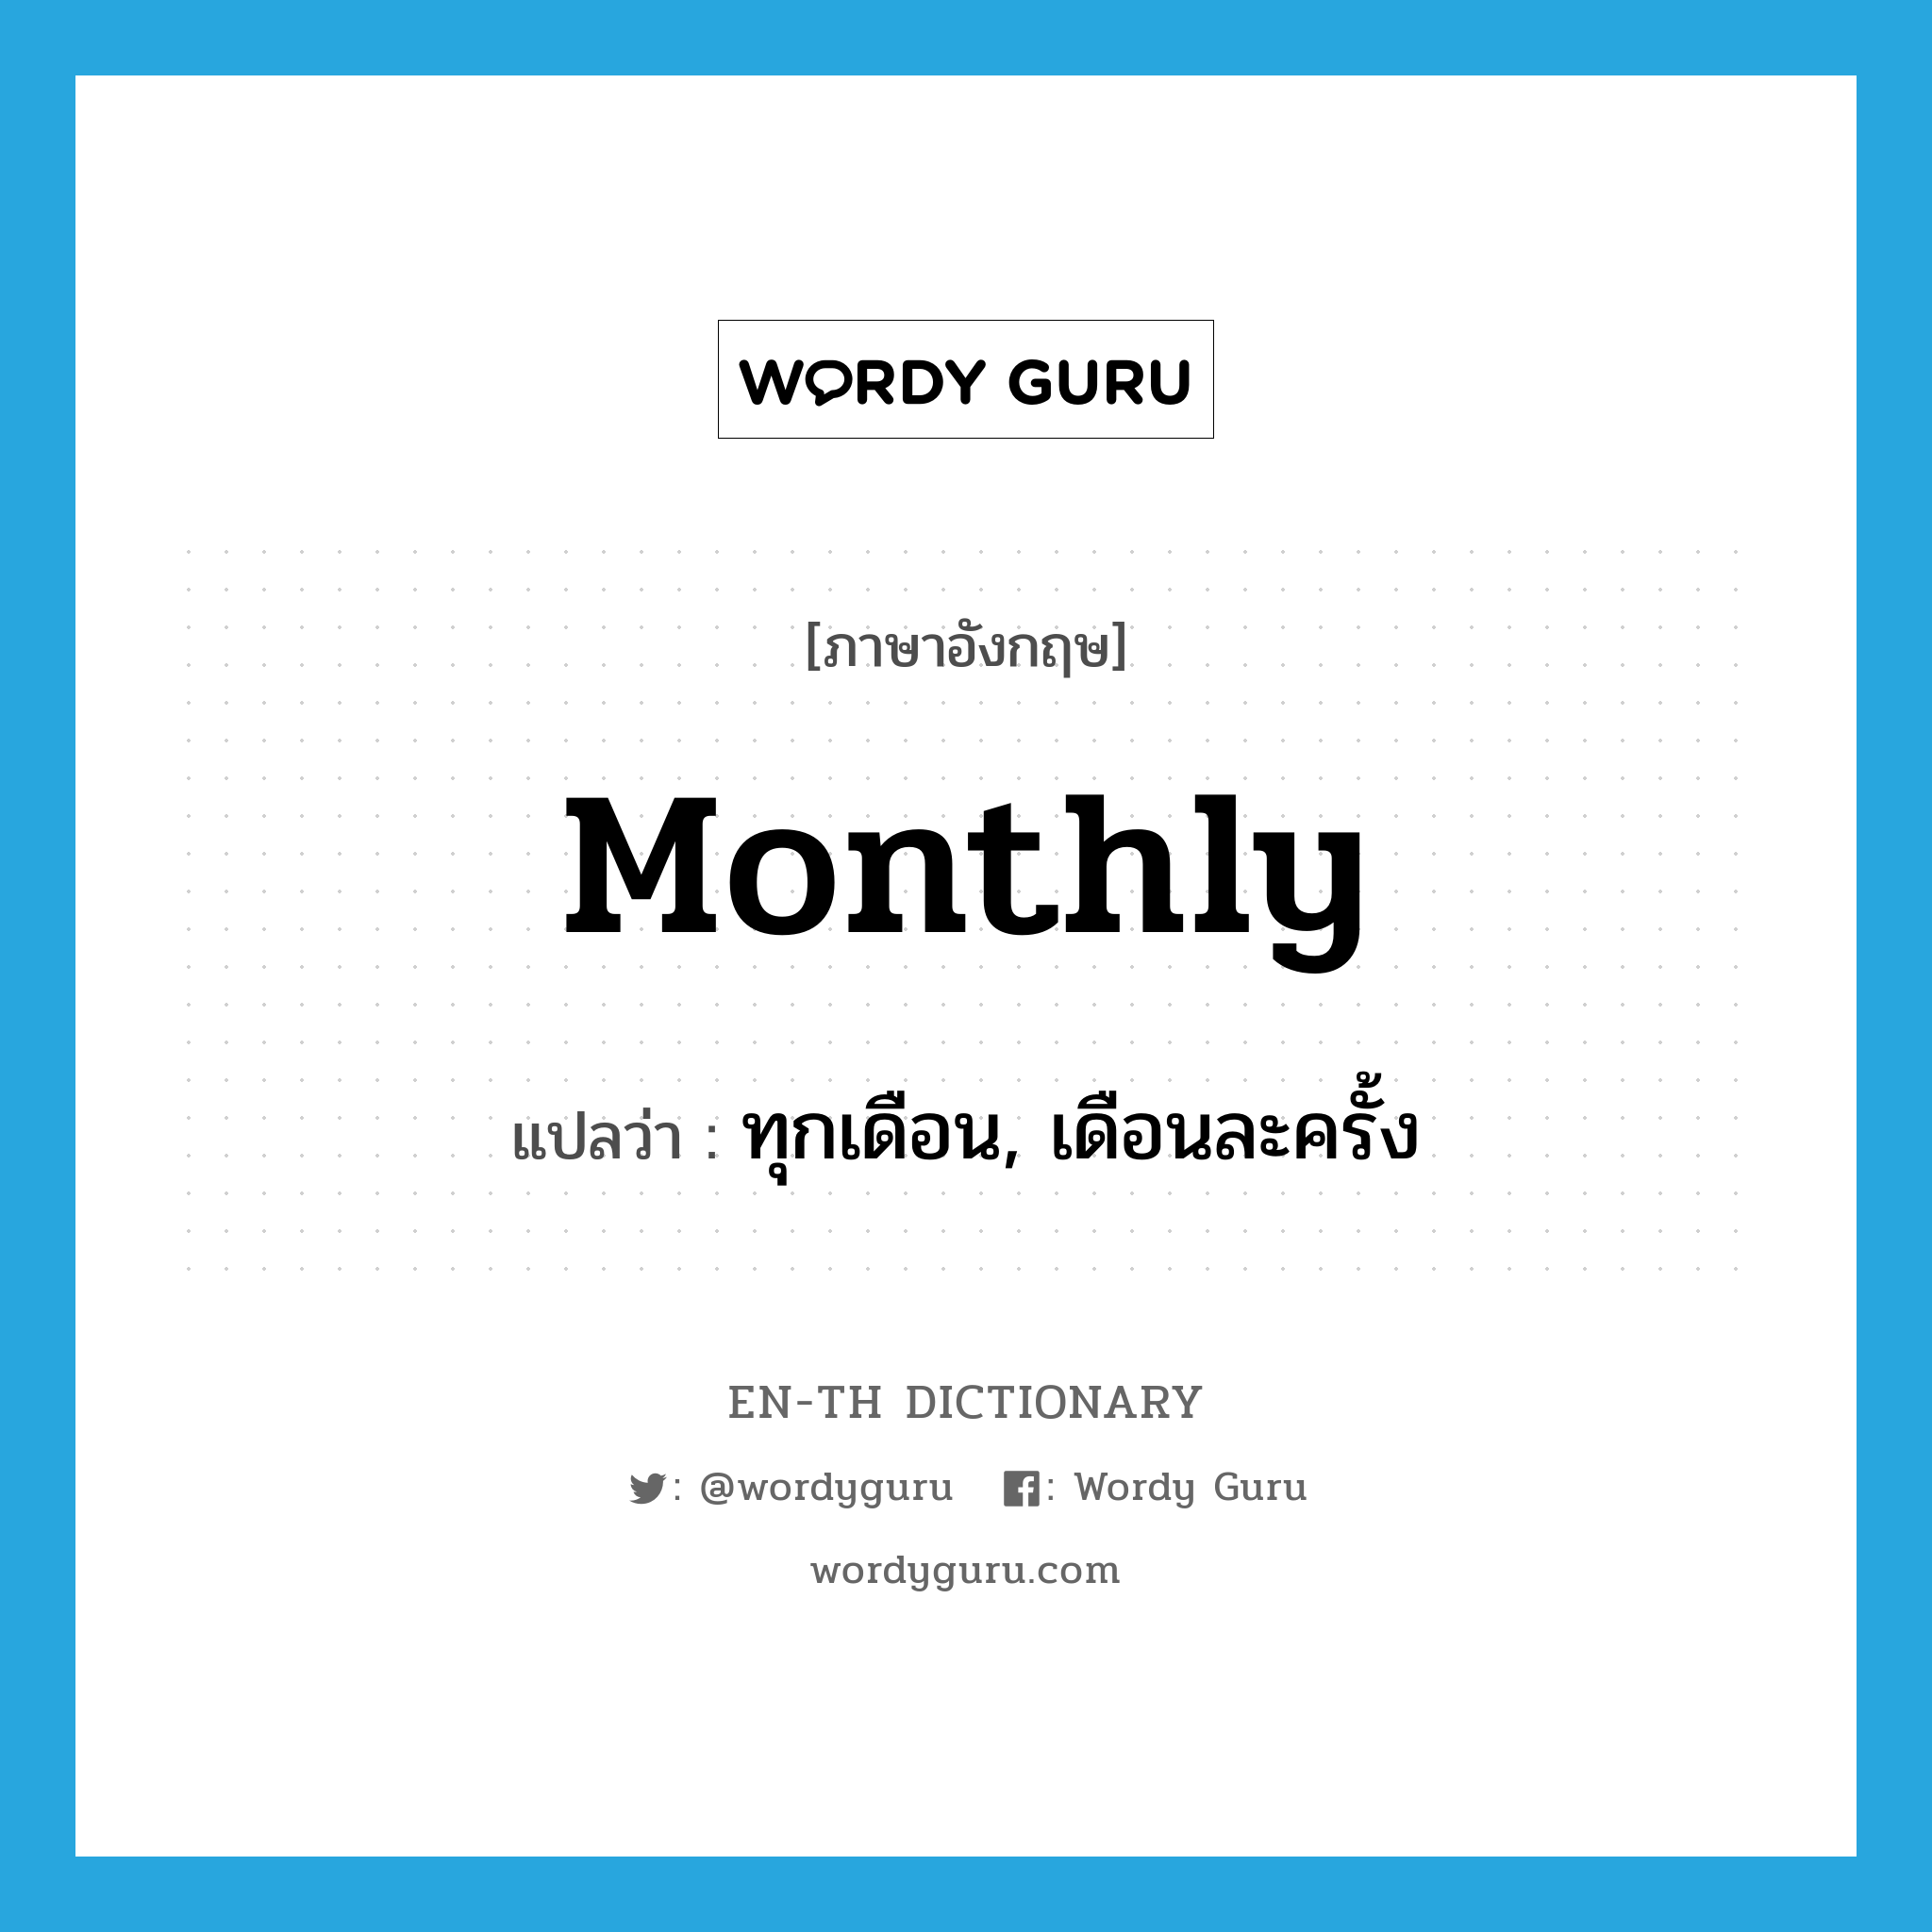 ทุกเดือน, เดือนละครั้ง ภาษาอังกฤษ?, คำศัพท์ภาษาอังกฤษ ทุกเดือน, เดือนละครั้ง แปลว่า monthly ประเภท ADV หมวด ADV